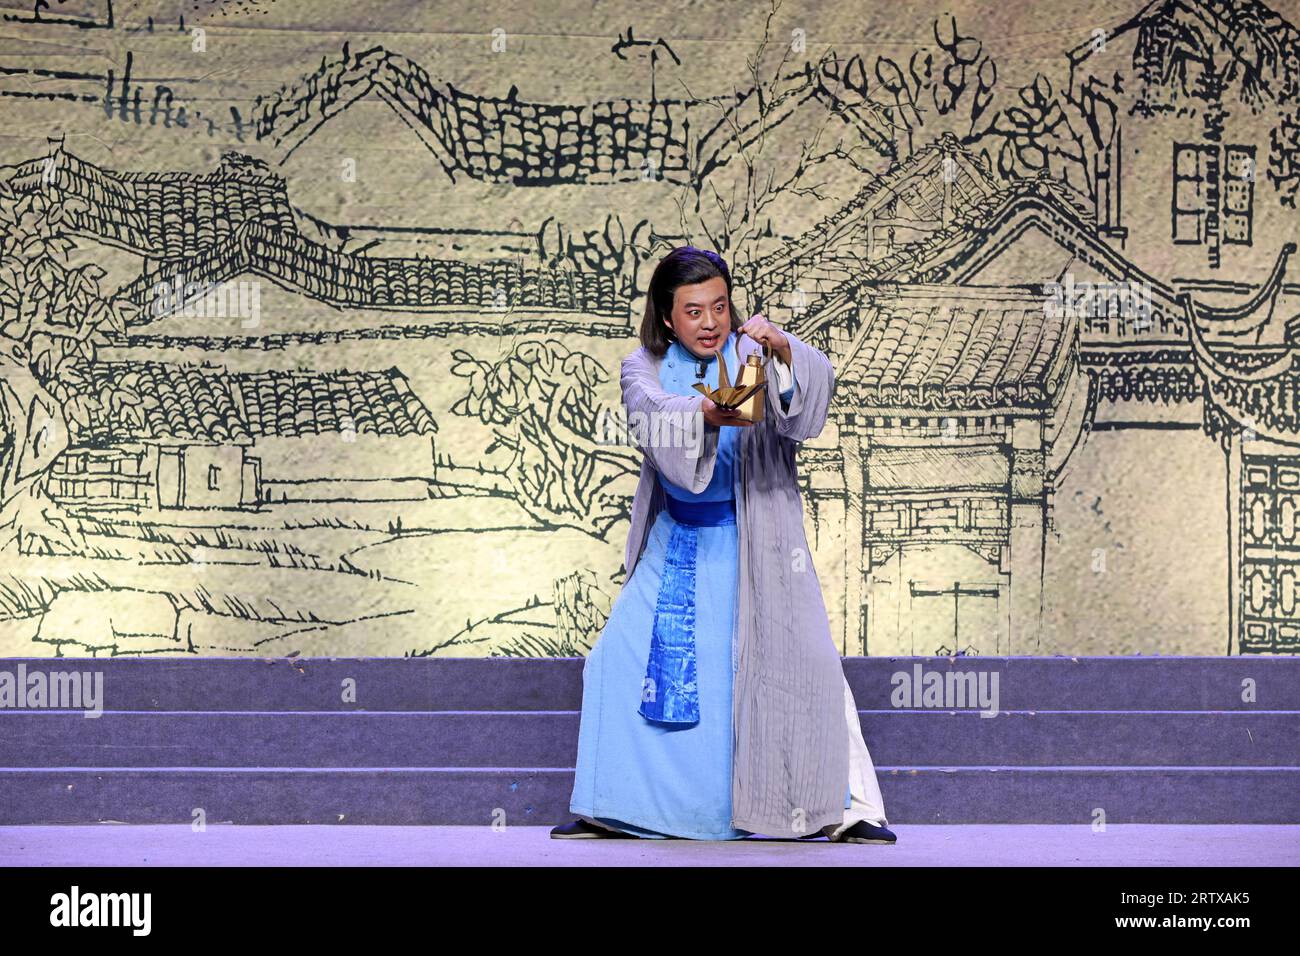 Tangshan, Chine - 21 décembre 2021 : photographies d'une représentation théâtrale traditionnelle chinoise, Chine du Nord Banque D'Images